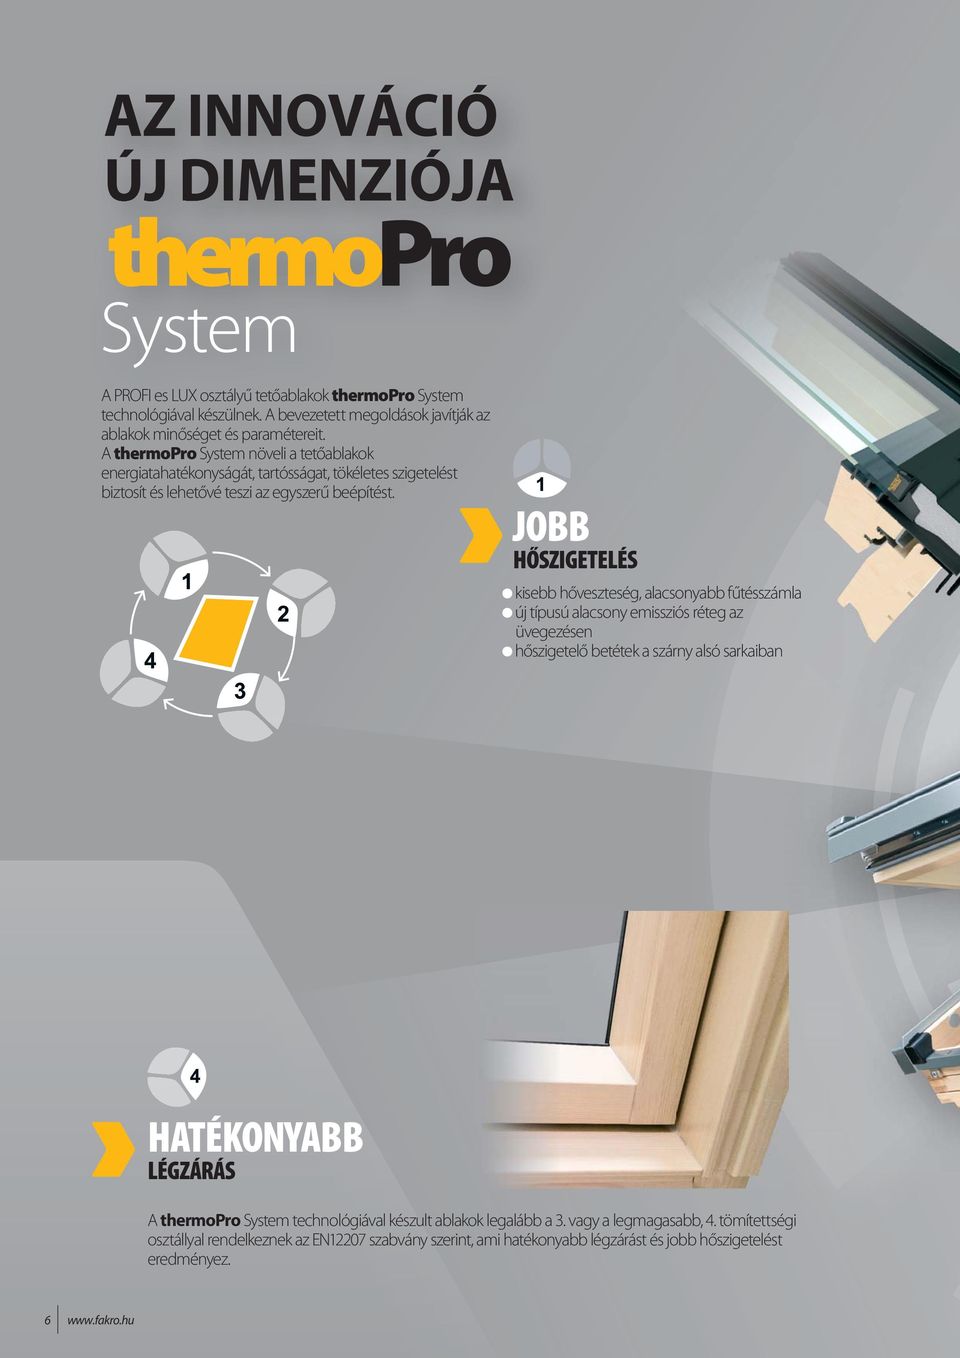 A thermopro System növeli a tetőablakok energiatahatékonyságát, tartósságat, tökéletes szigetelést biztosít és lehetővé teszi az egyszerű beépítést.